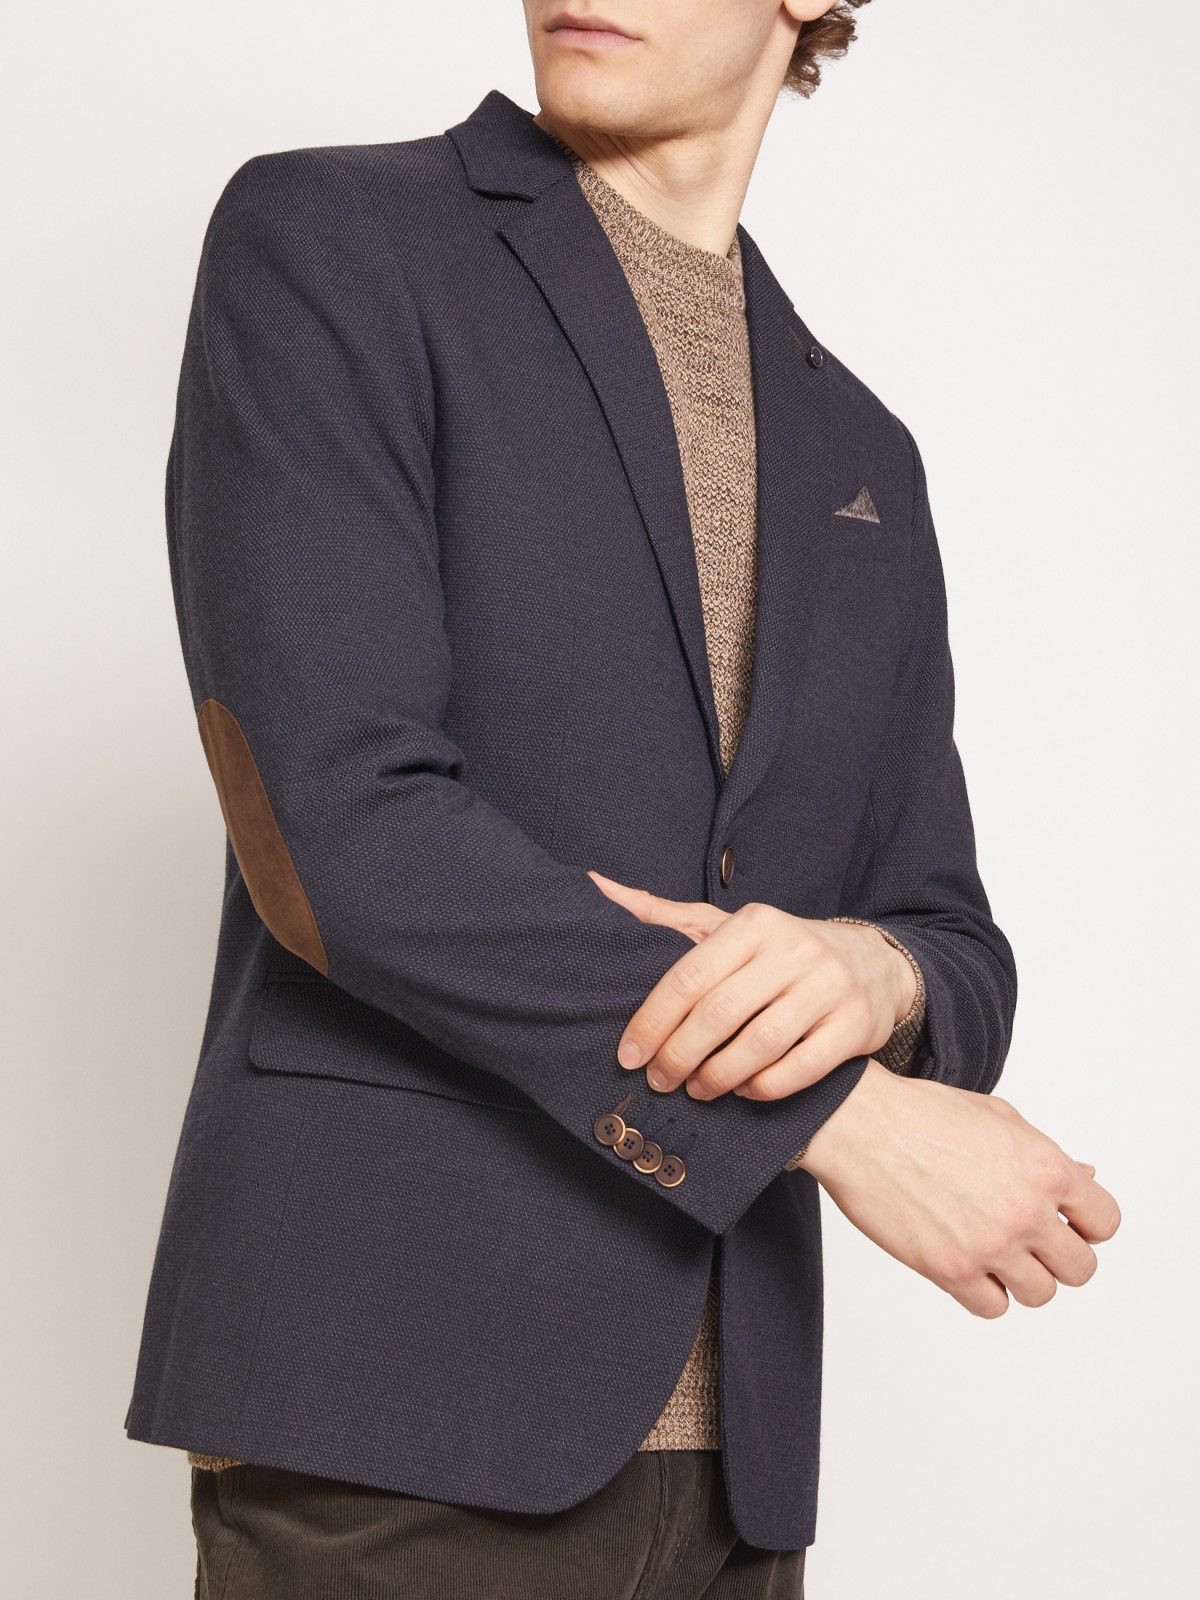 Однобортный пиджак с декоративными заплатками zolla 010345466063, цвет темно-серый, размер M - фото 4